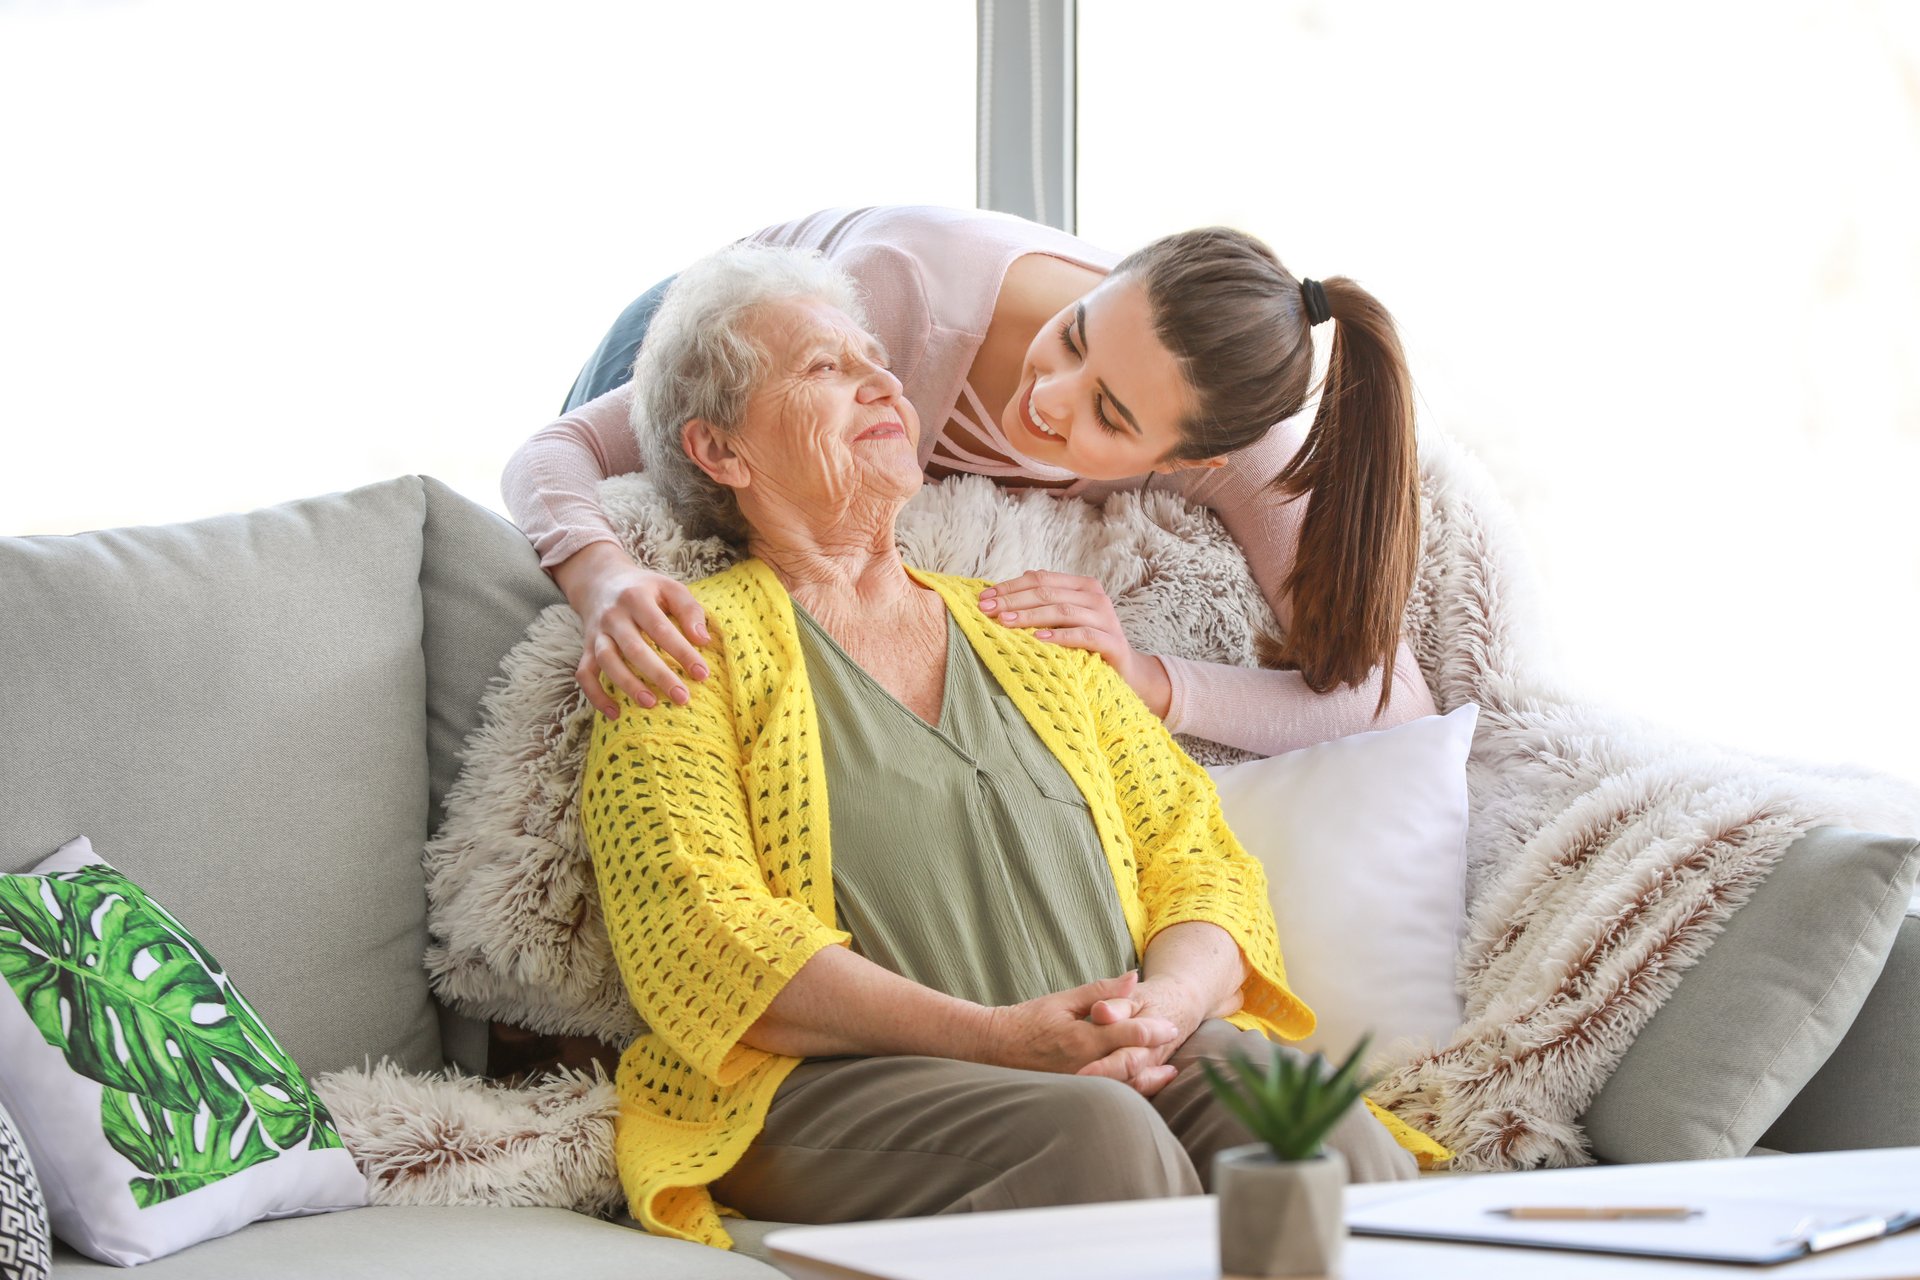 Eine Enkelin mit rosanem Oberteil und braunem langen Haar schaut von hinten auf ihre Großmutter die auf einem hellen Sofa sitzt. Die Großmutter trägt eine olivfarbene Bluse und gelbe Weste.